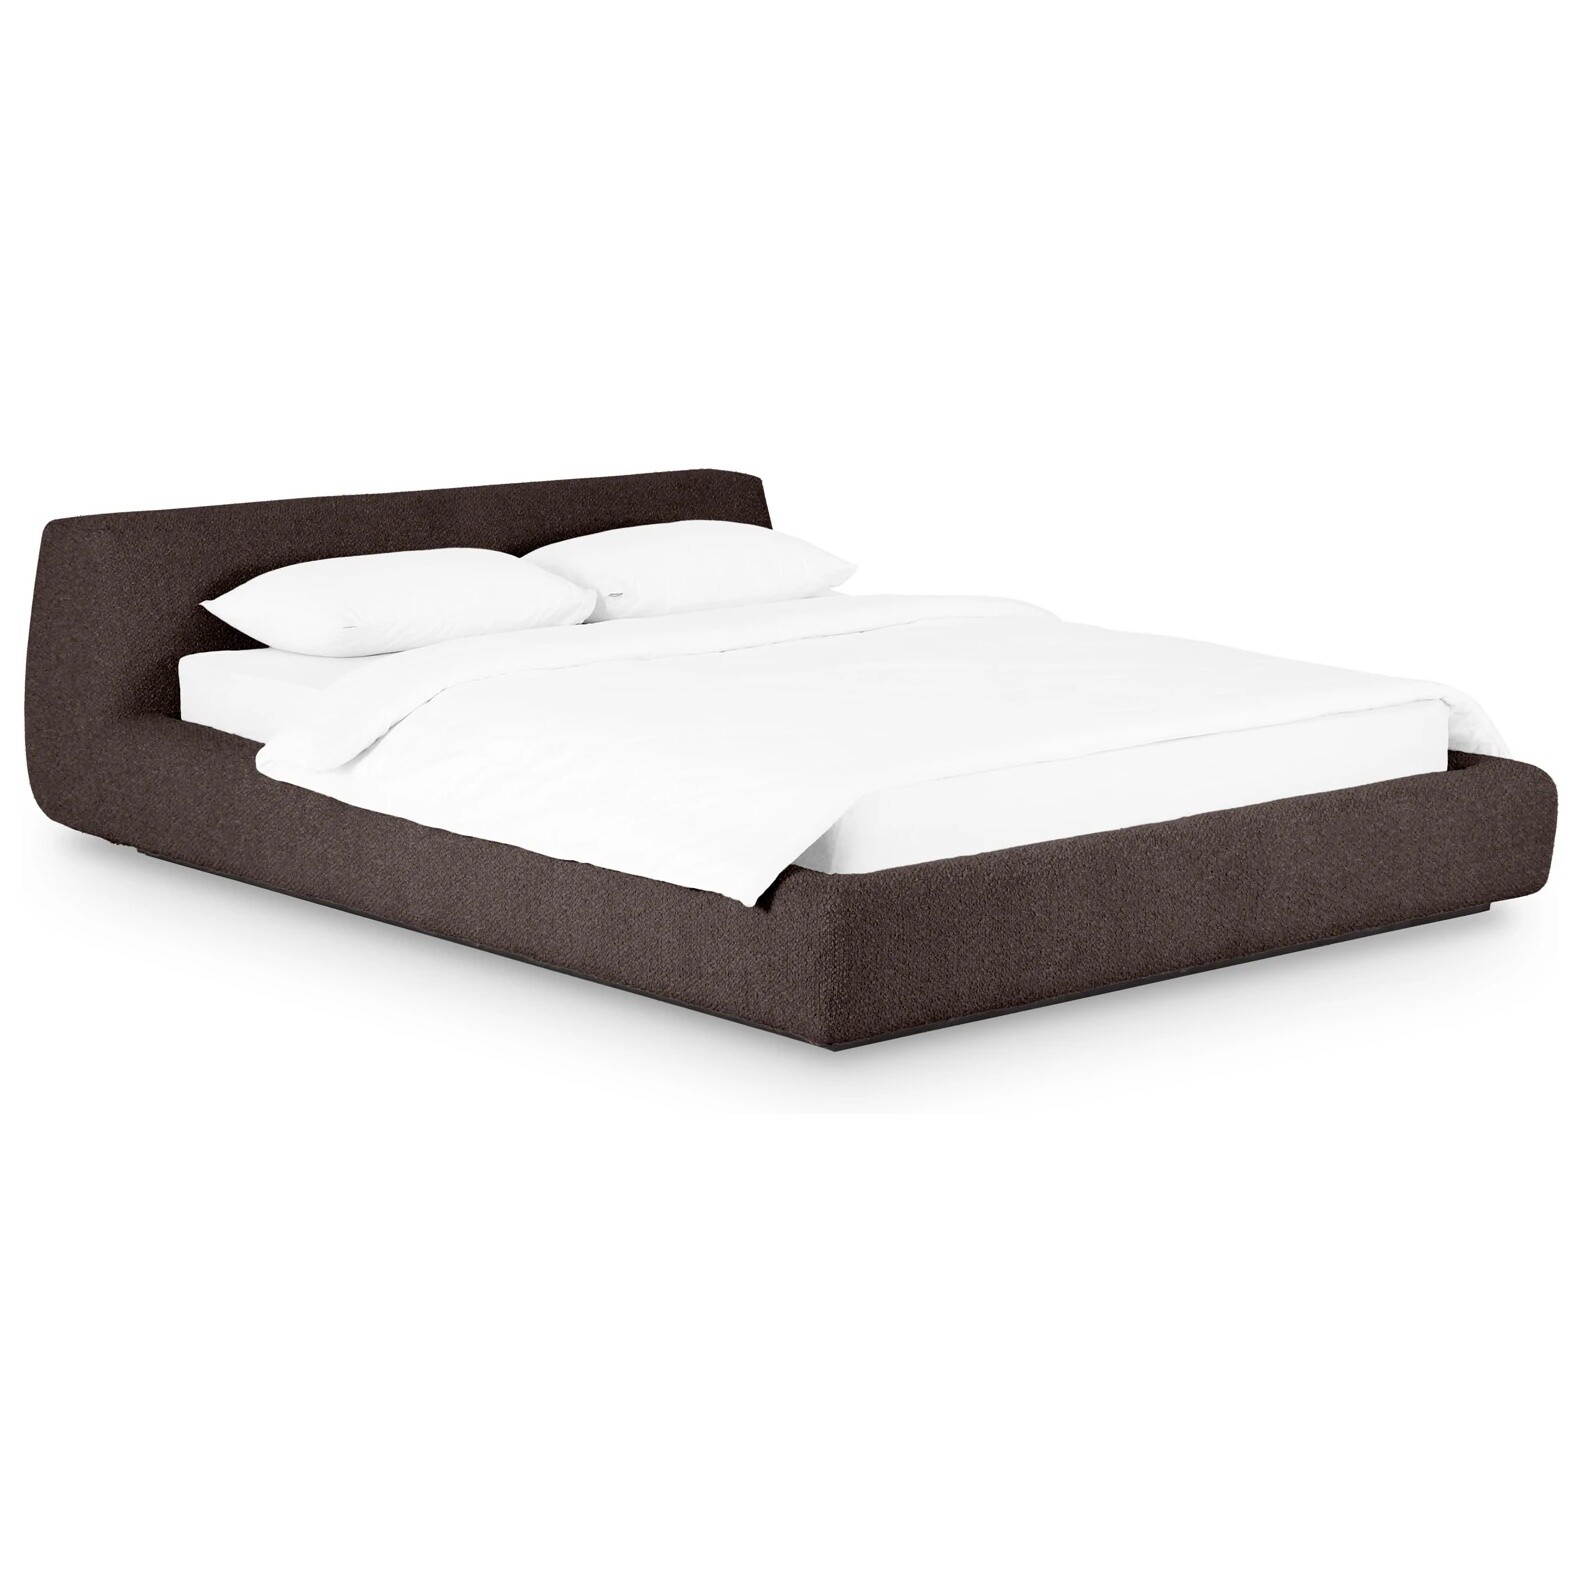 Кровать полутораспальная со съемным чехлом букле 140х200 см коричневая Vatta Buckle brown